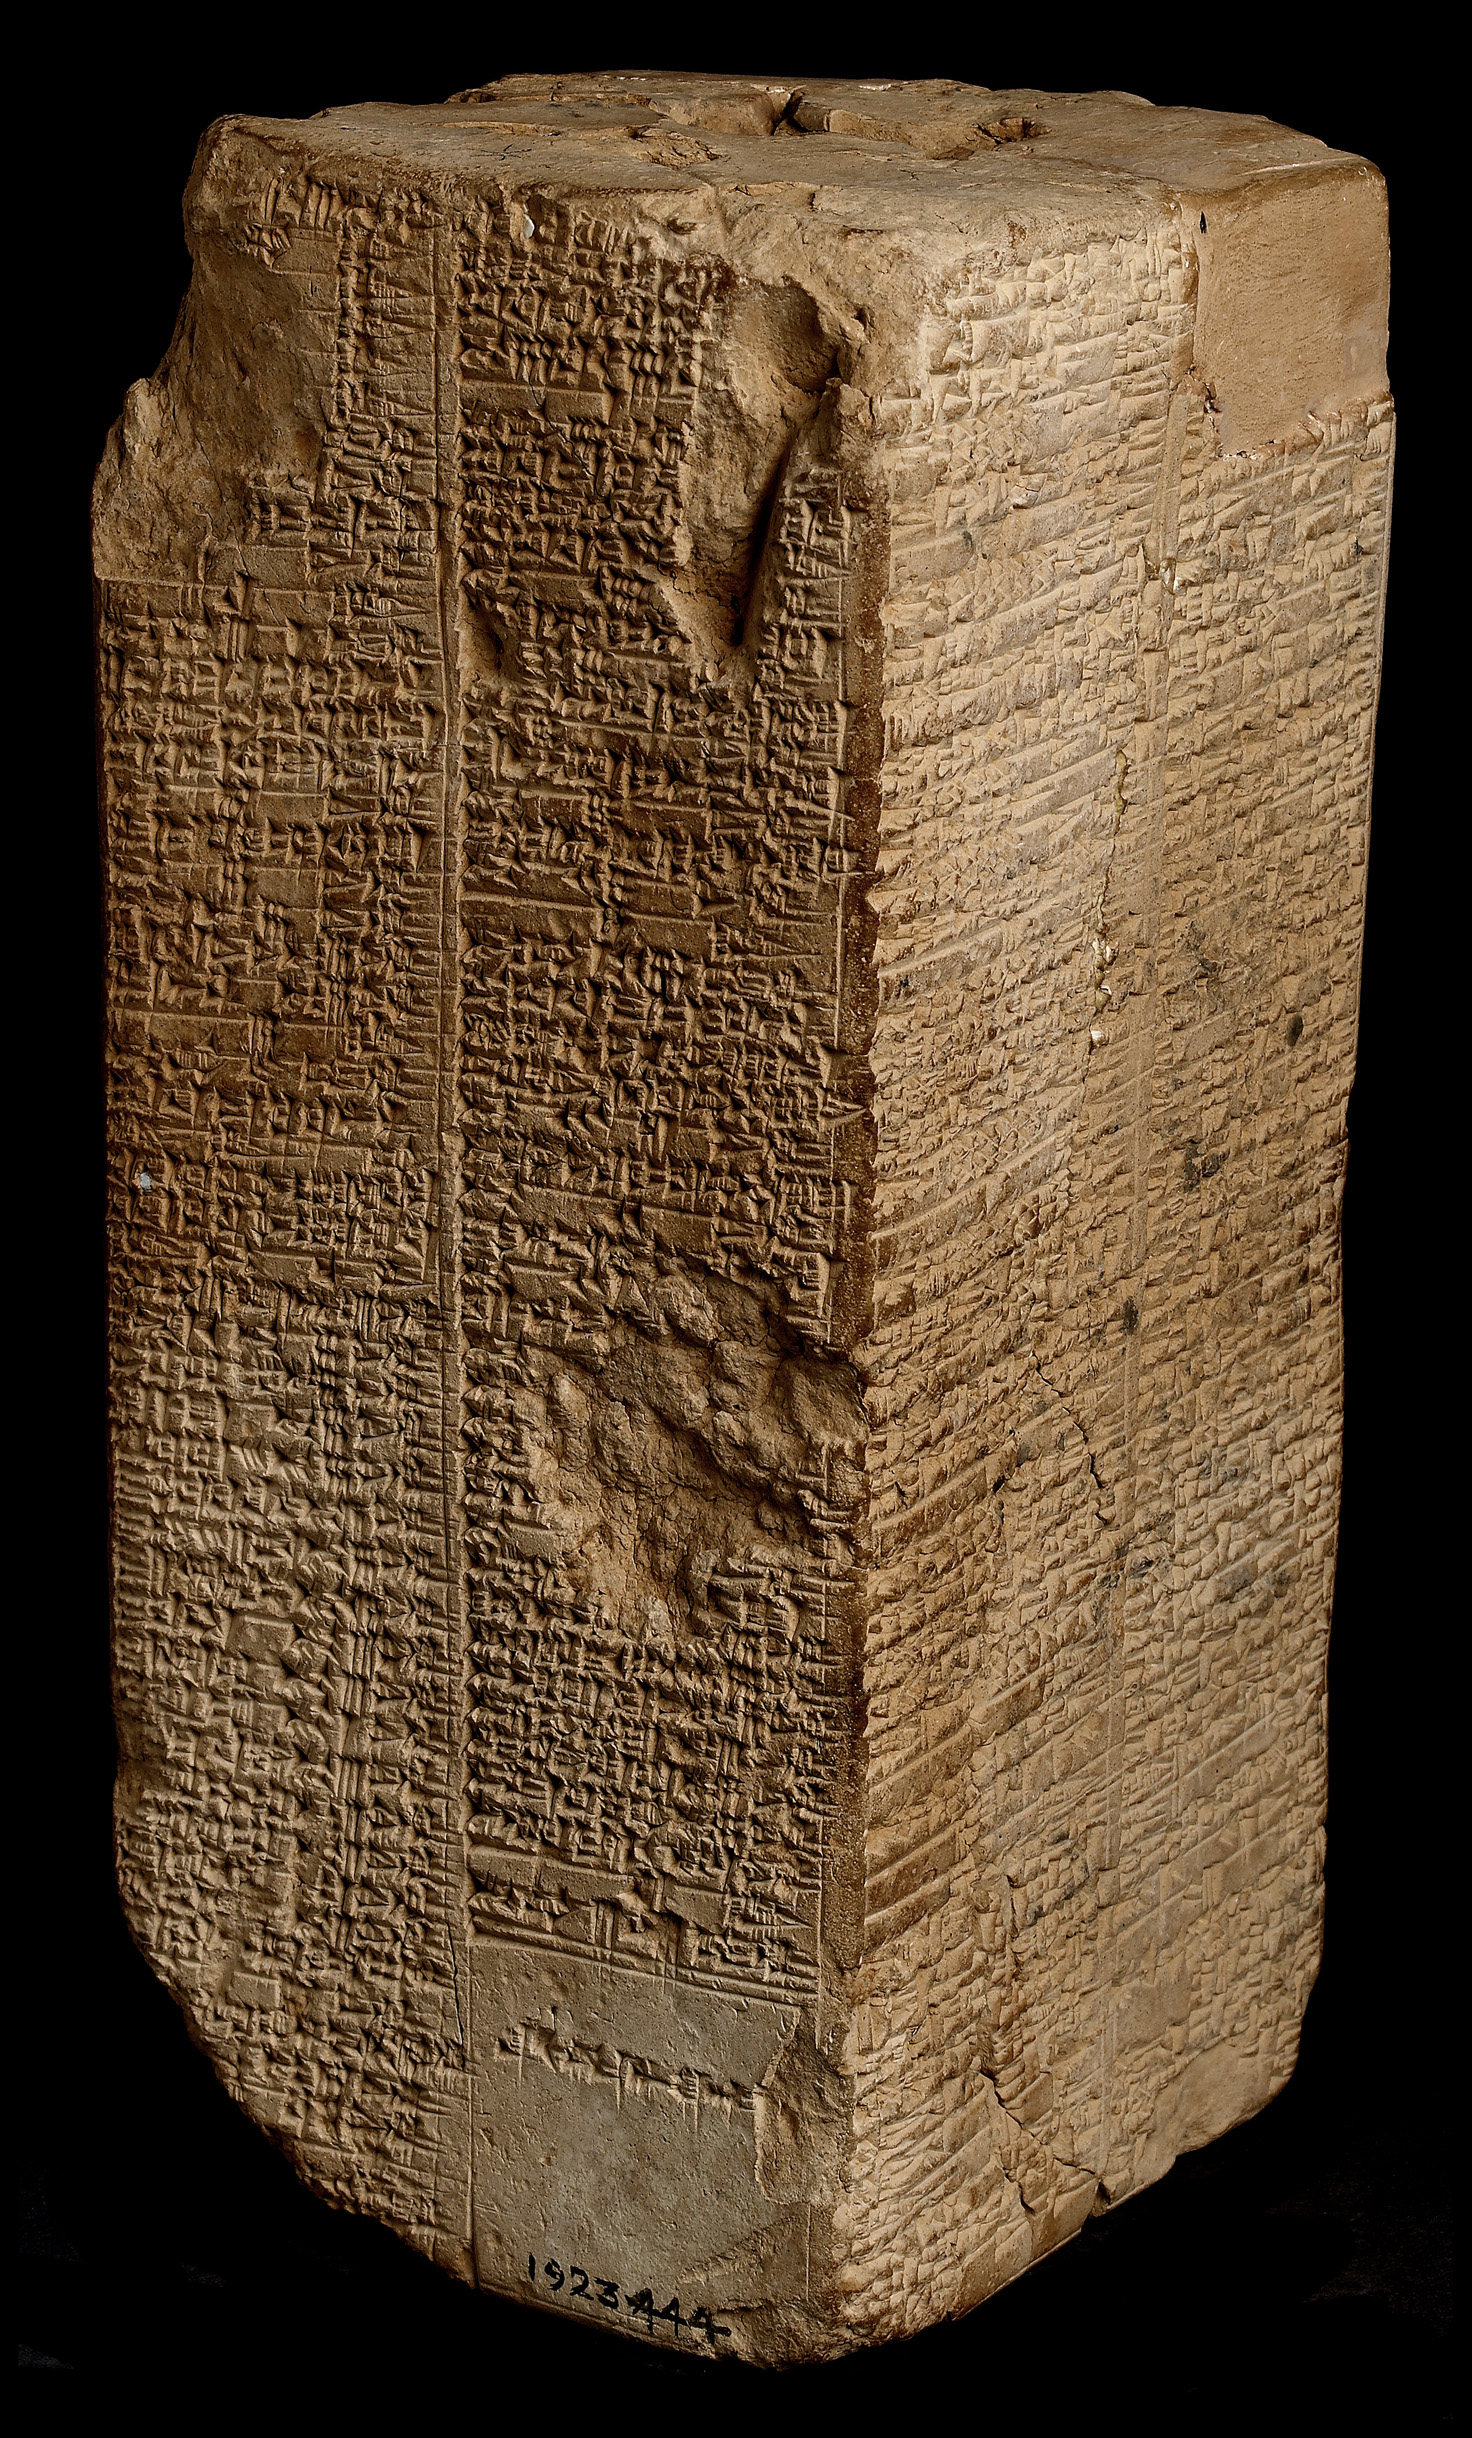 上图：主前2000-1800年的韦尔德-布伦德尔立柱（Weld-Blundell Prism），上面用楔形文字刻有《苏美尔王表 The Sumerian King List》，现存于英国牛津大学阿什莫林博物馆艺术与考古博物馆（Ashmolean Museum of Art and Archaeology）。《苏美尔王表》是一份古代文献，发现于美索不达米亚各地，使用苏美尔语书写，目前发现总共有16份，内容基本相同。上面所列的洪水之前的每个王都统治了2-4万年，洪水之后的每个王统治的时间从1200年逐渐降到几年。虽然《苏美尔王表》中有许多夸大的地方，但洪水之前和洪水之后的年龄的相差比例，与创世记的家谱接近。